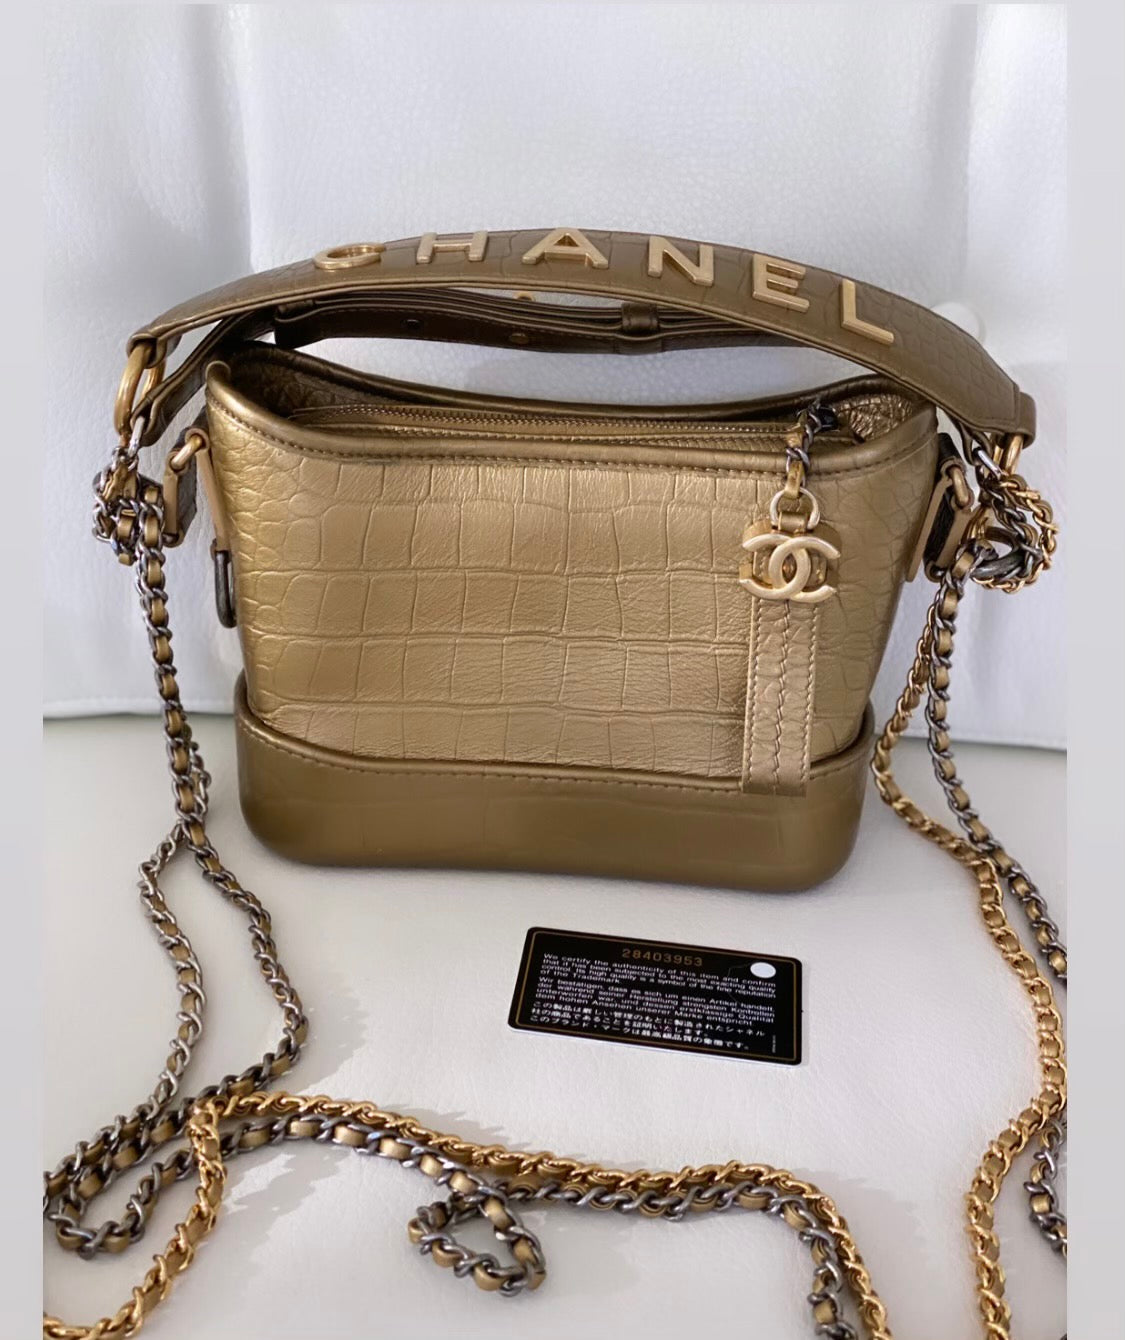 Chanel Gabrielle bag – Beccas Bags